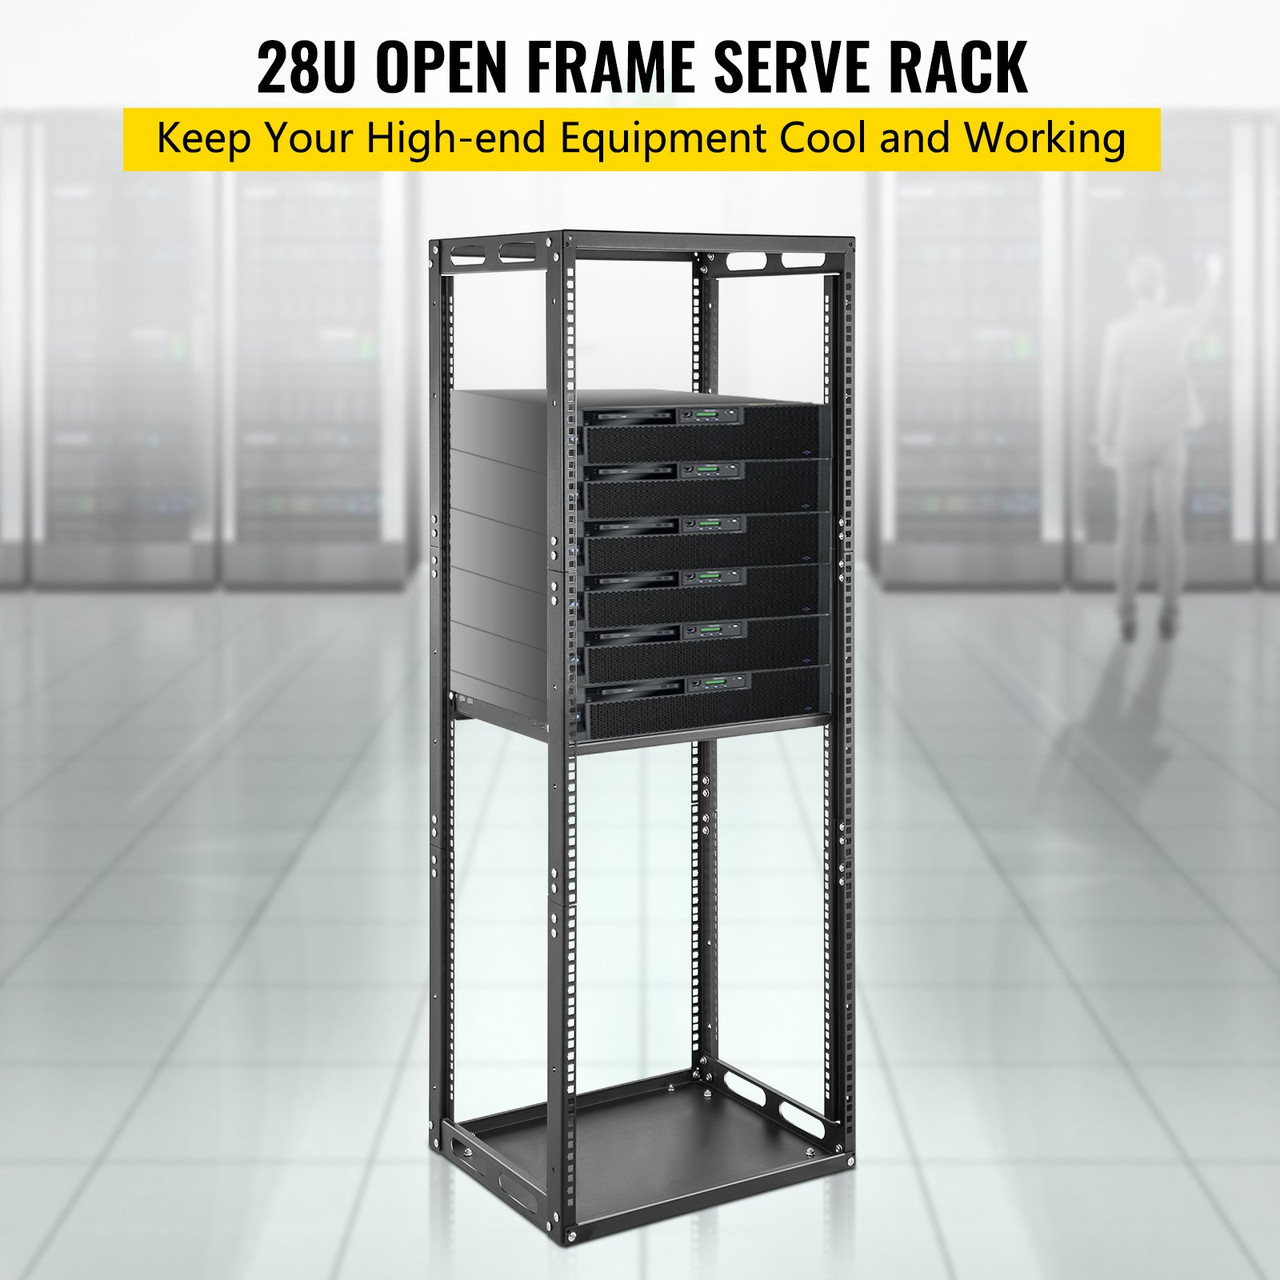 Server Rack, 28U Open Frame Rack, 4-Post IT Server Network Relay Rack, 19 Inch Server/Audio Network Equipment Rack Cold Rolled Steel, Heavy Duty Threaded Rack, Holds Network Servers & AV Gear